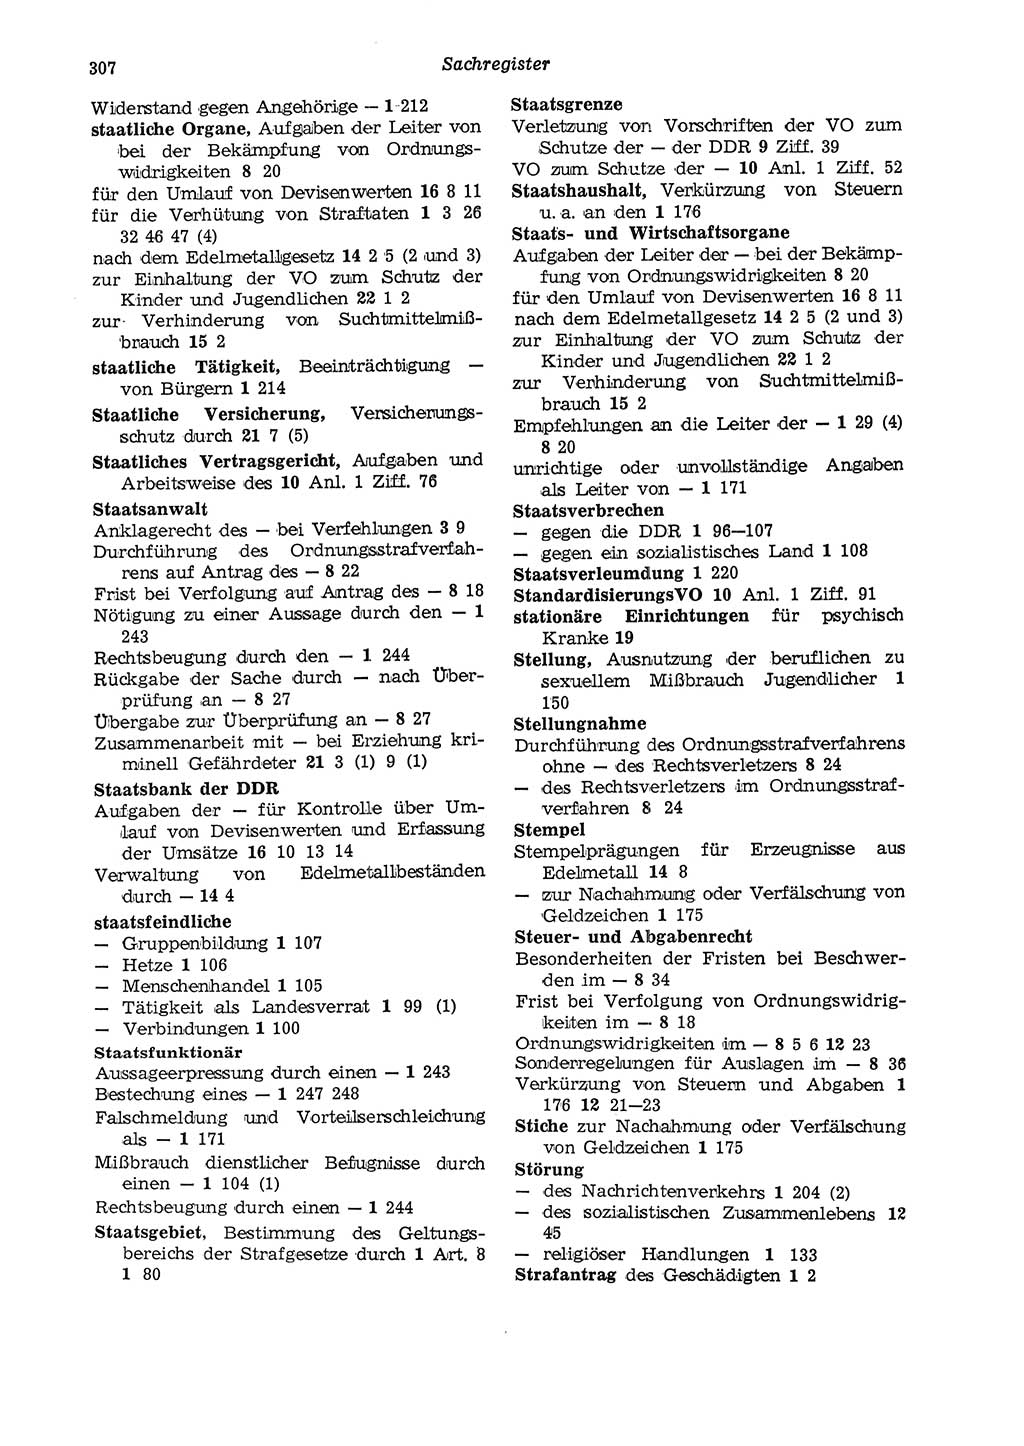 Strafgesetzbuch (StGB) der Deutschen Demokratischen Republik (DDR) und angrenzende Gesetze und Bestimmungen 1975, Seite 307 (StGB DDR Ges. Best. 1975, S. 307)